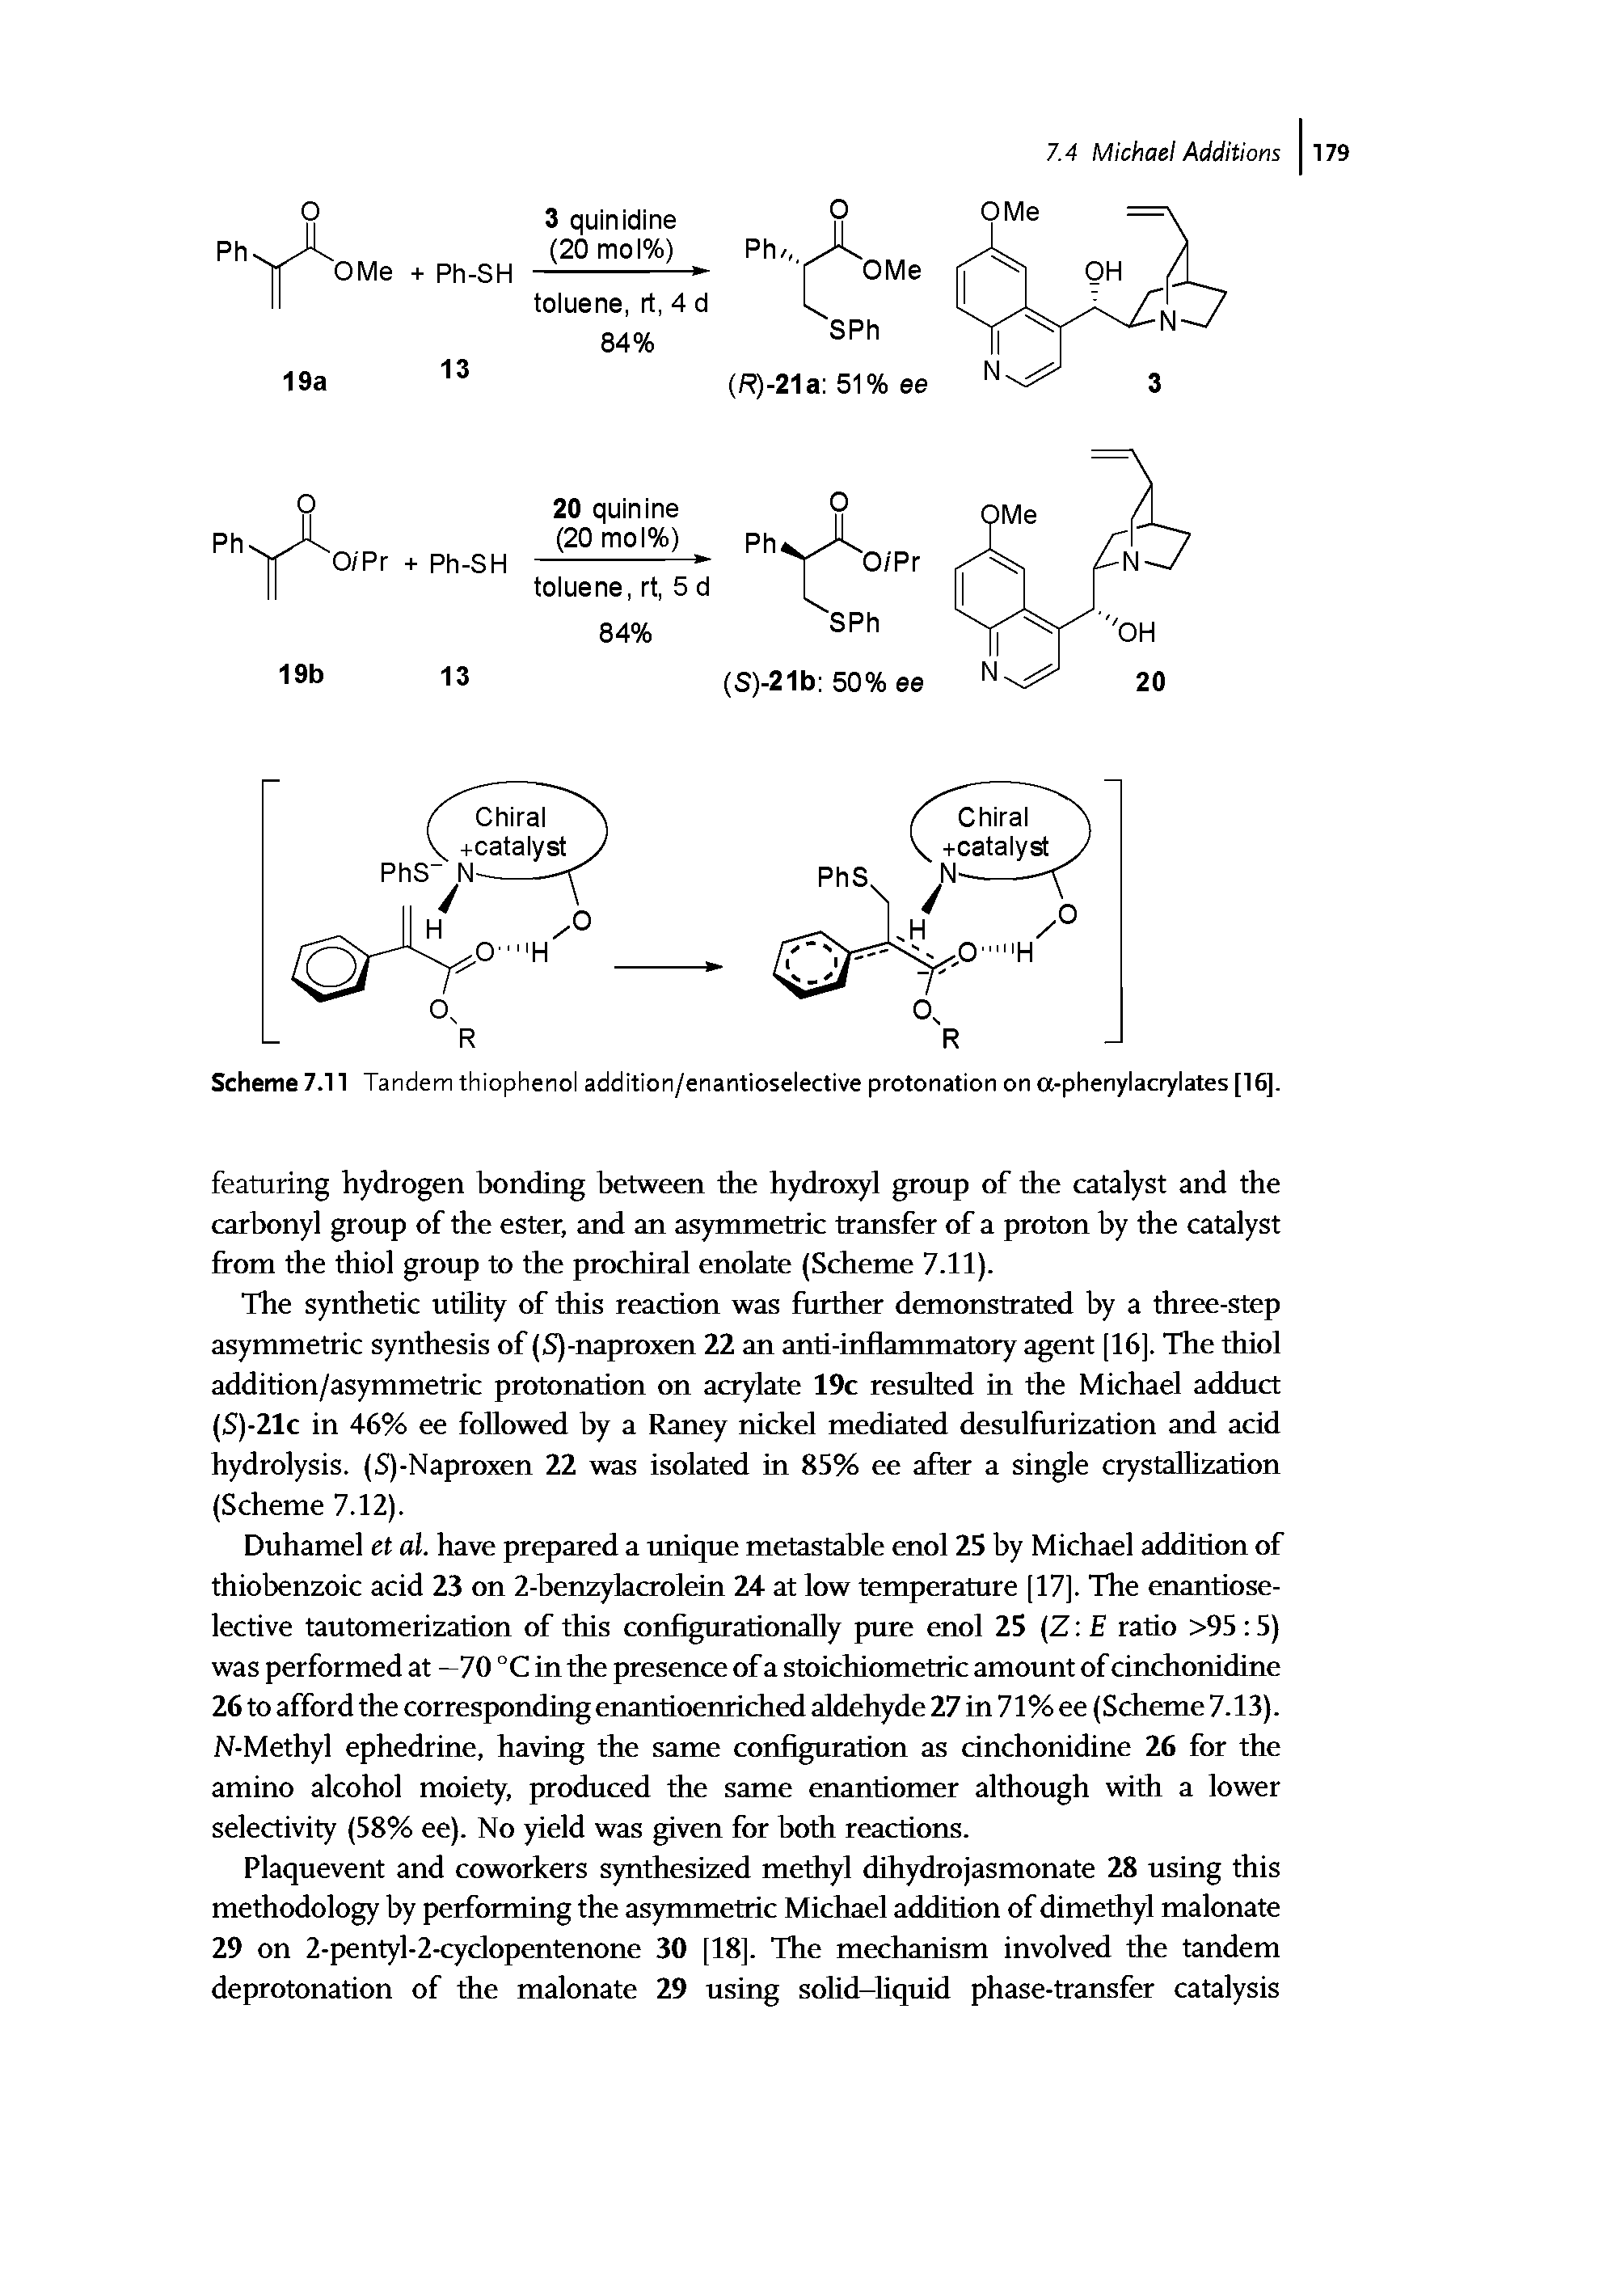 Scheme 7.11 Tandem thiophenol addition/enantioselective protonation on a-phenylacrylates [16].